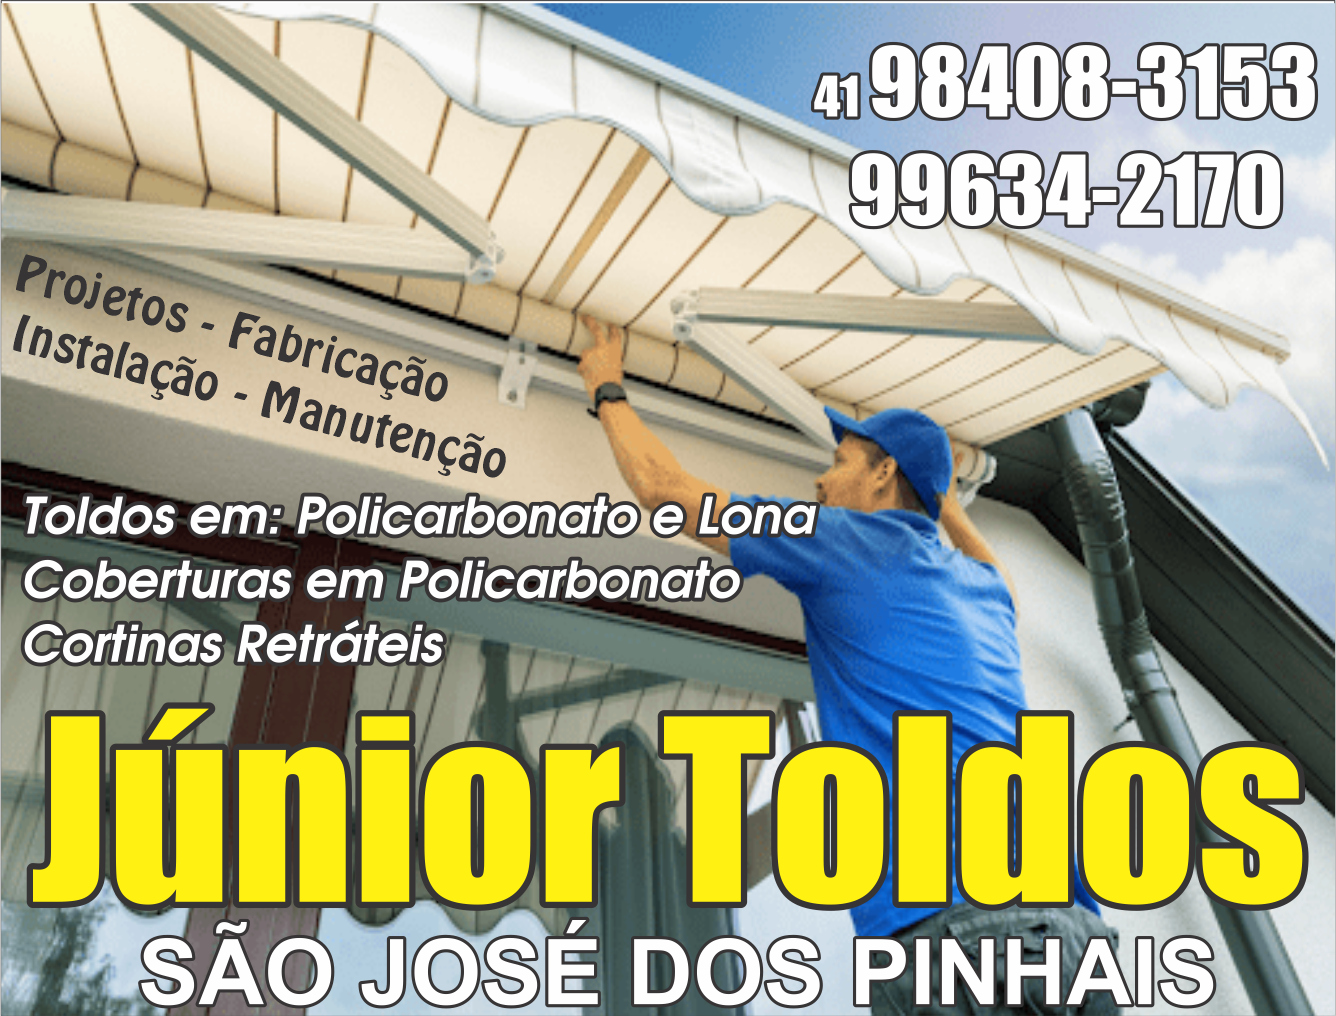 Júnior Toldos      Fones: (41) 98408-3153 / (41) 99634-2170